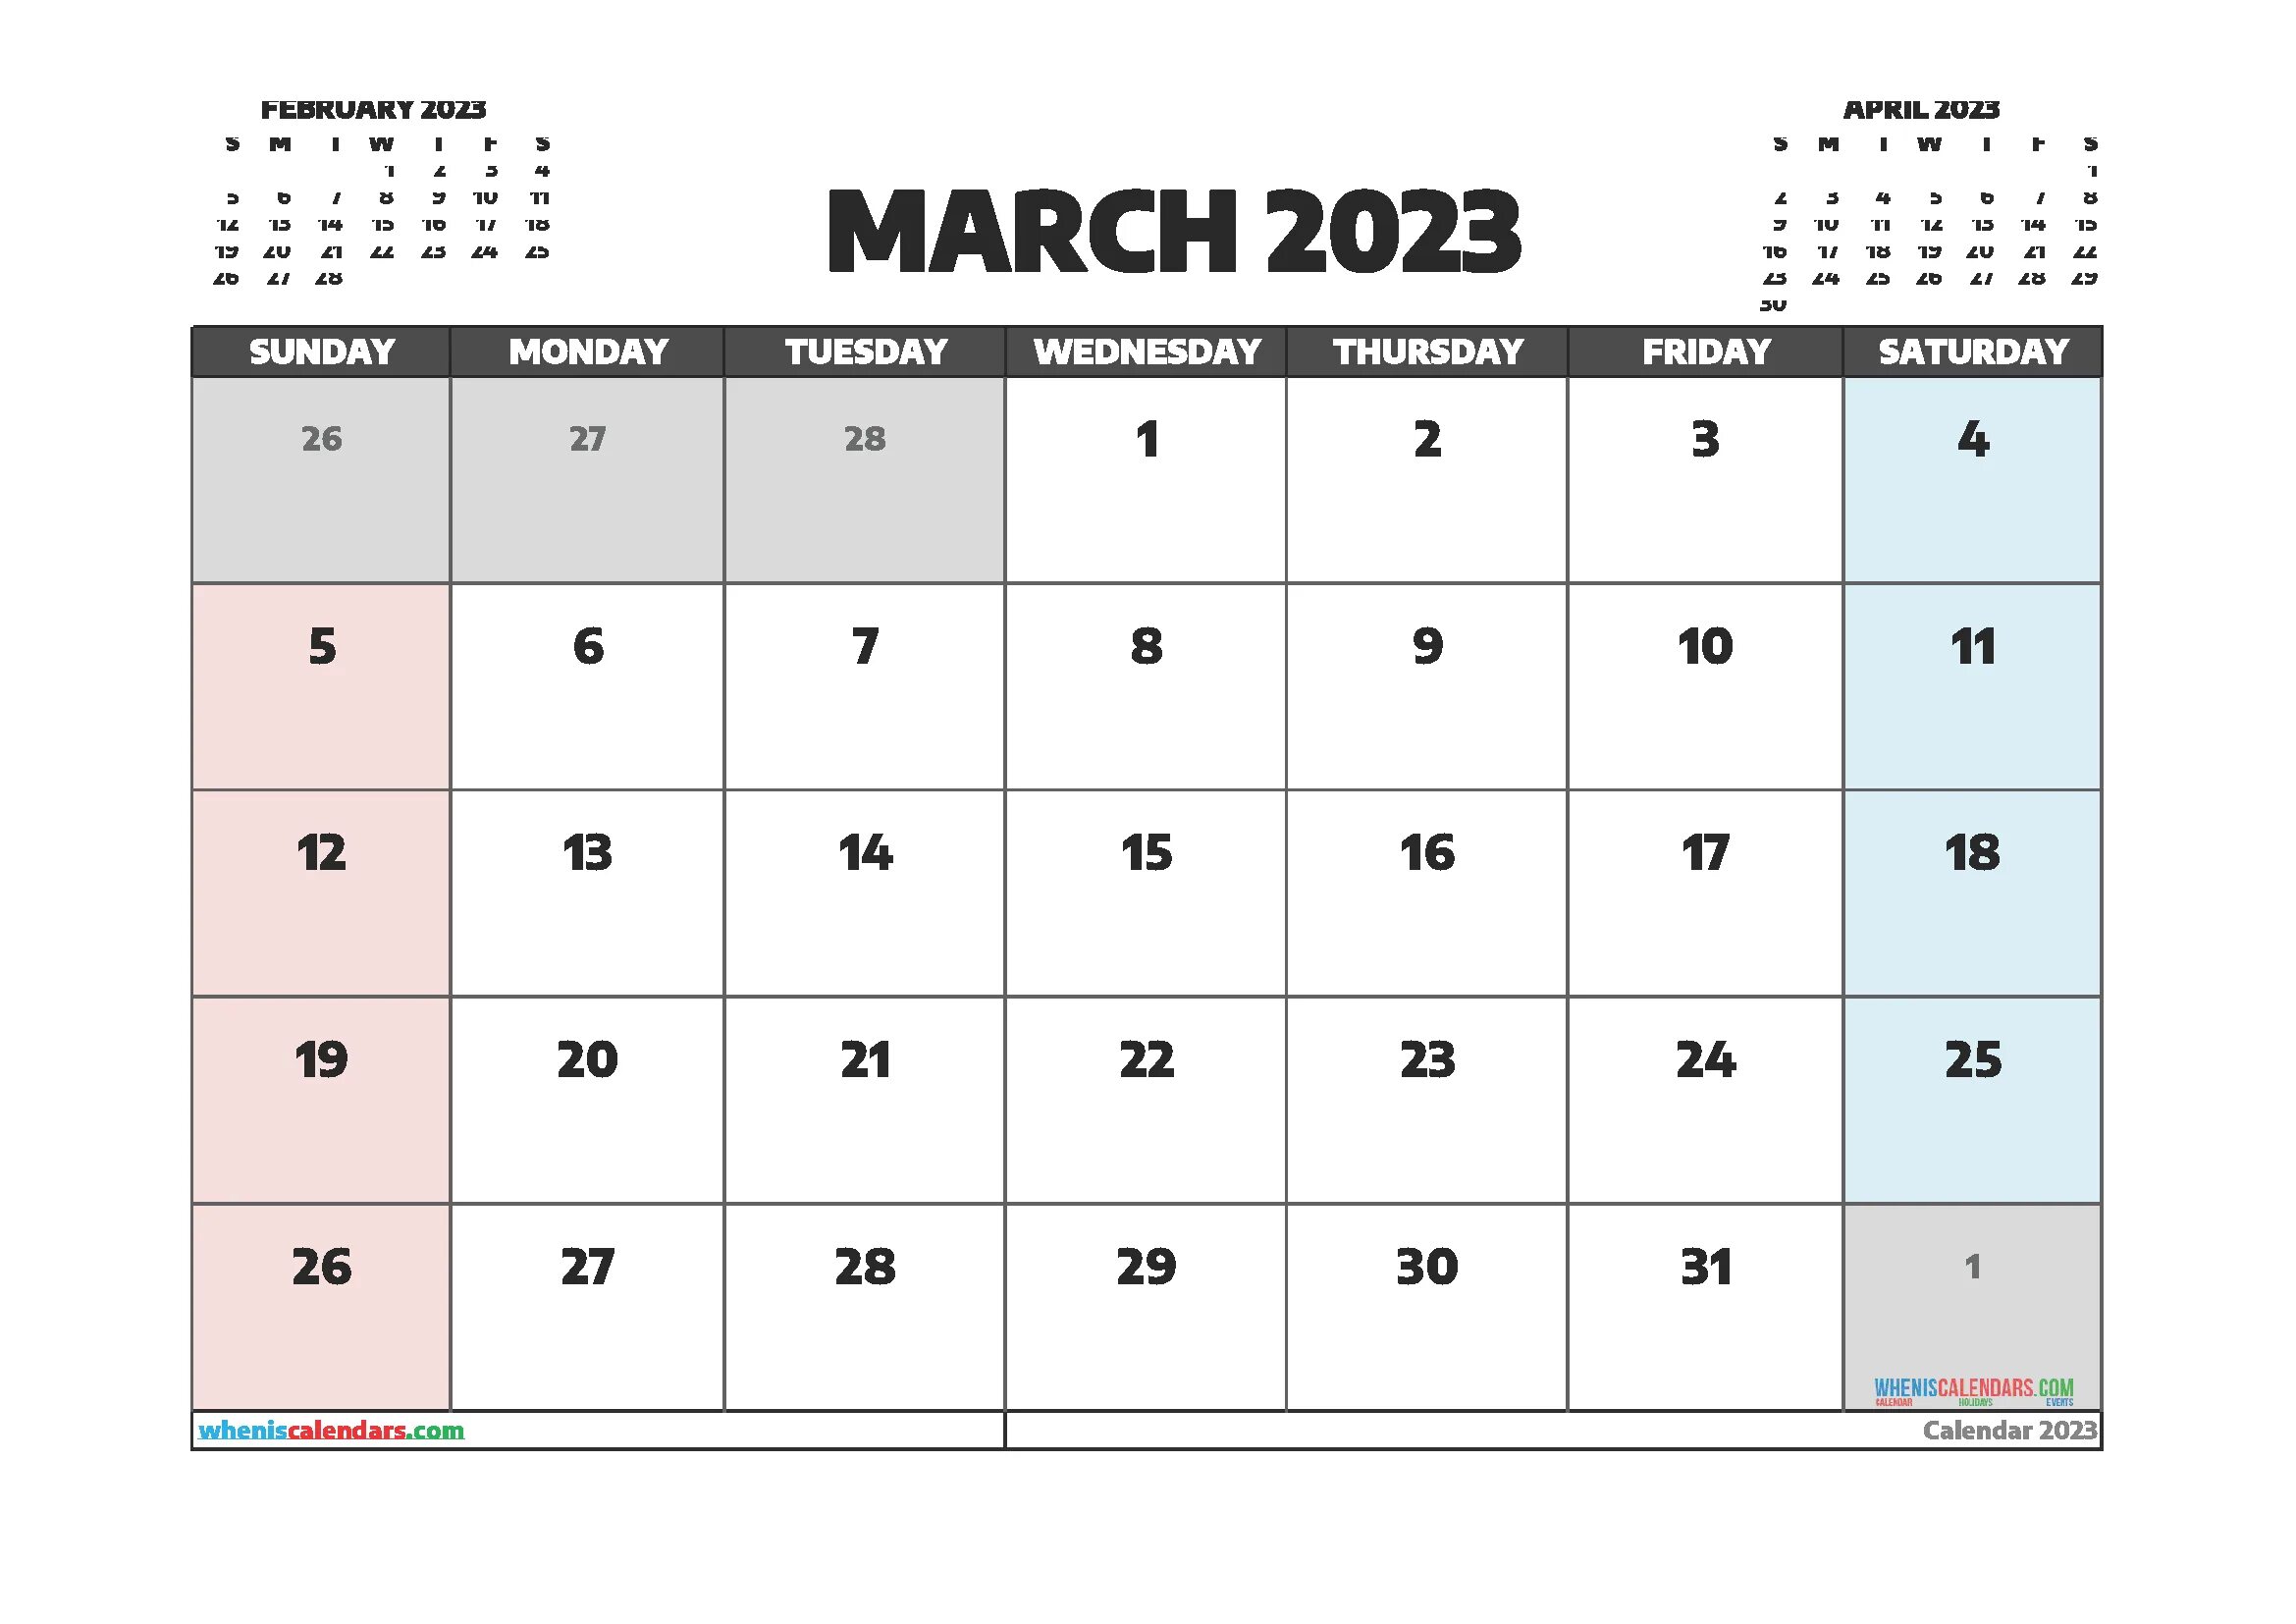 Календарь 2023 апрель месяц. April 2023 календарь. Calendar July 2023. Календарь июнь 2023. Календарь сентябрь 2023.